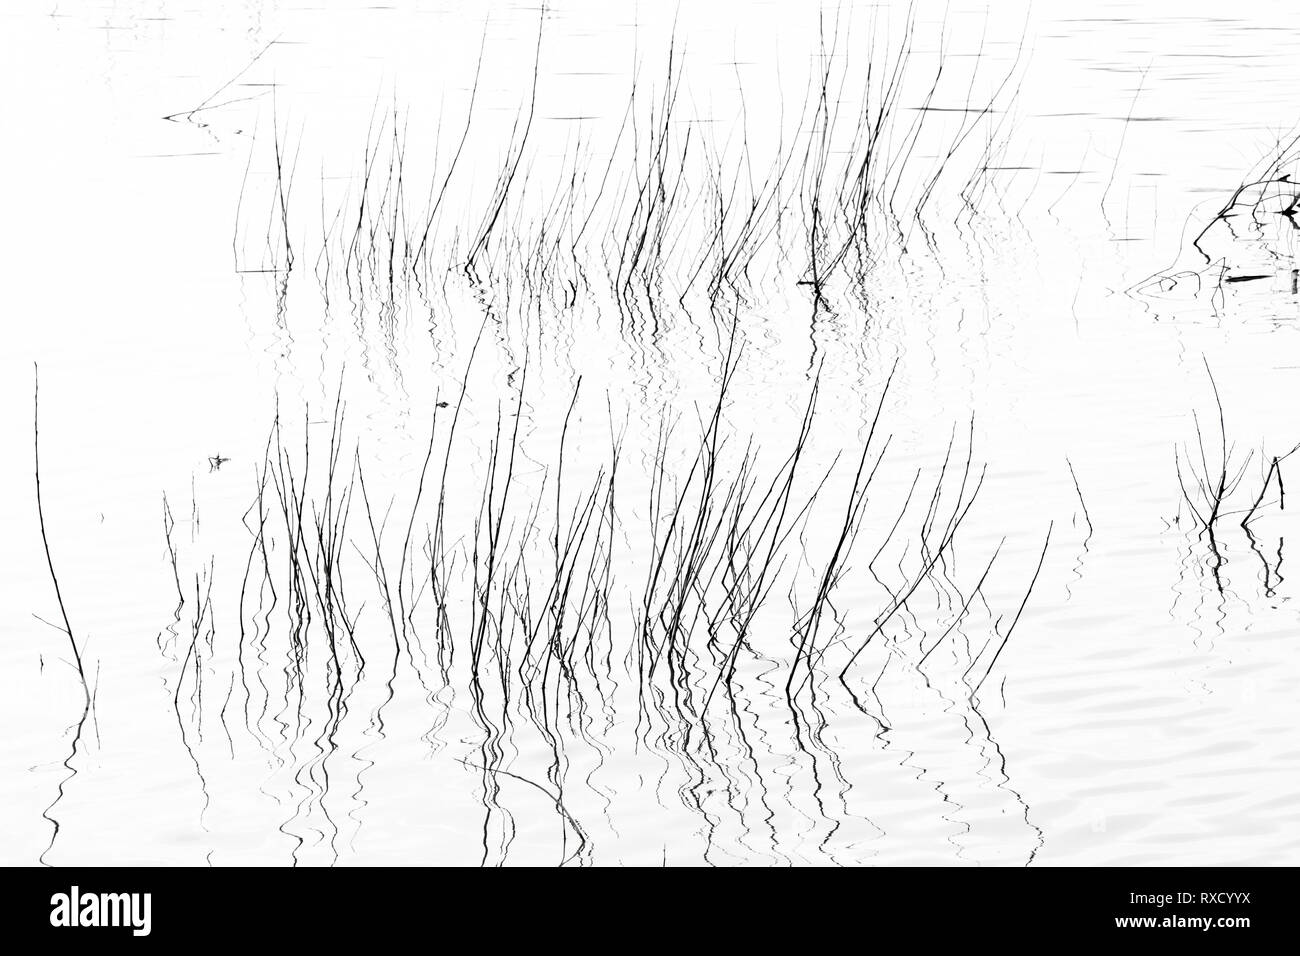 Erba secca nel fiume silhouette, dettaglio di reed nello stagno in alto contrasto bianco e nero Foto Stock